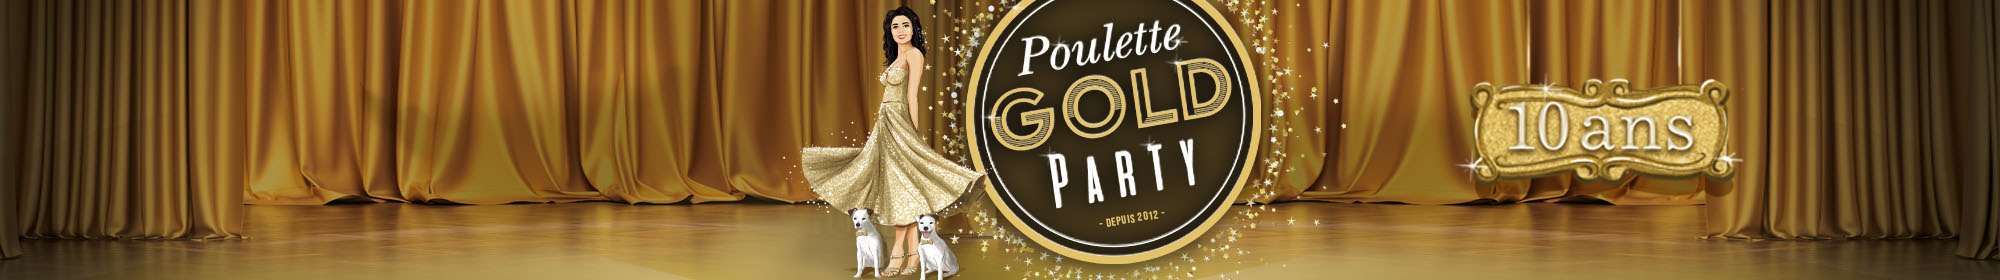 Poulette Gold Party